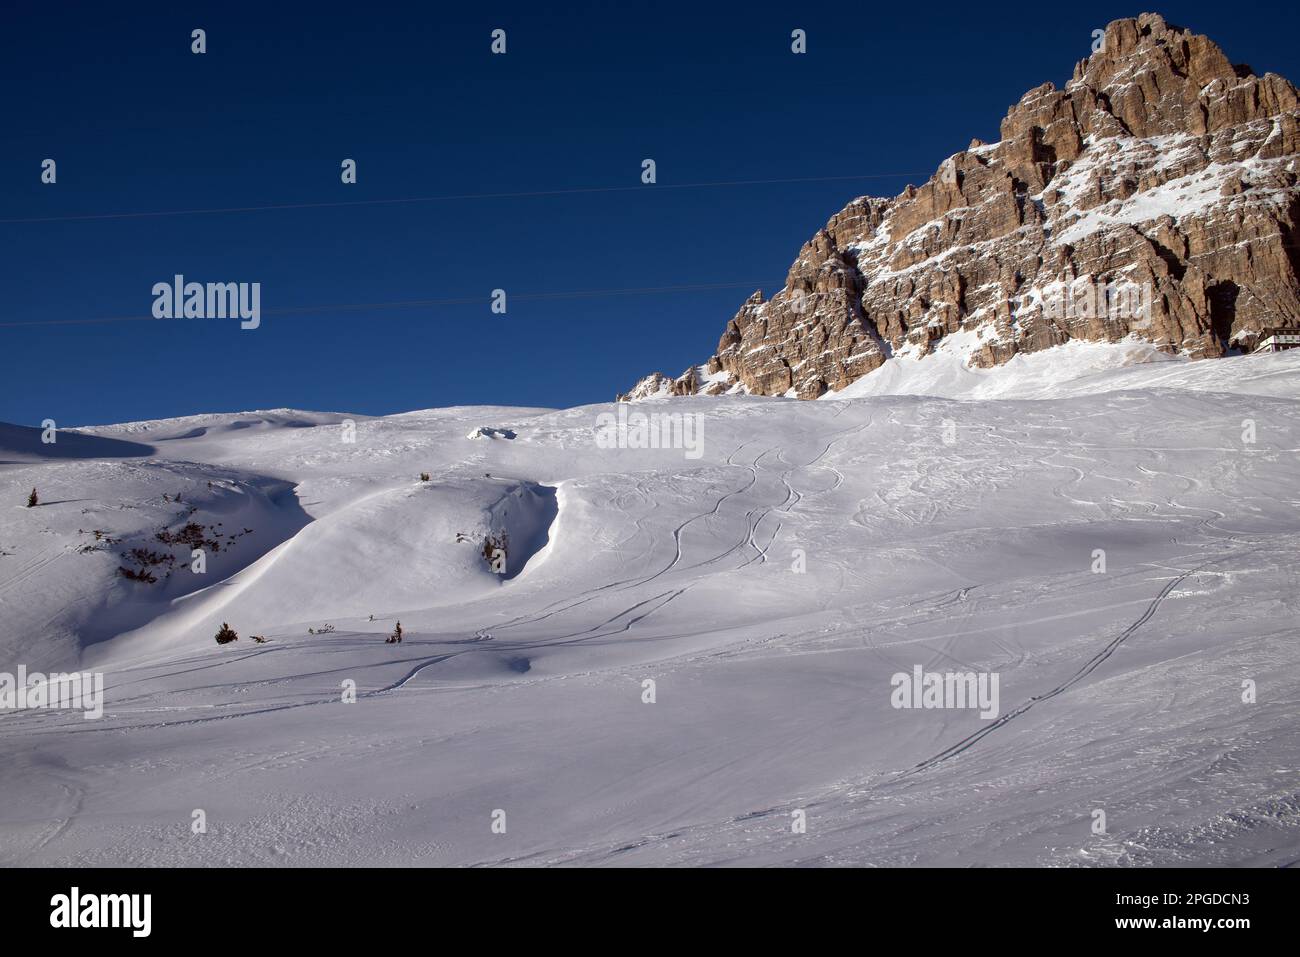 il panorama delle dolomiti in inverno, lo spettacolo delle dolomiti innevato. Foto Stock